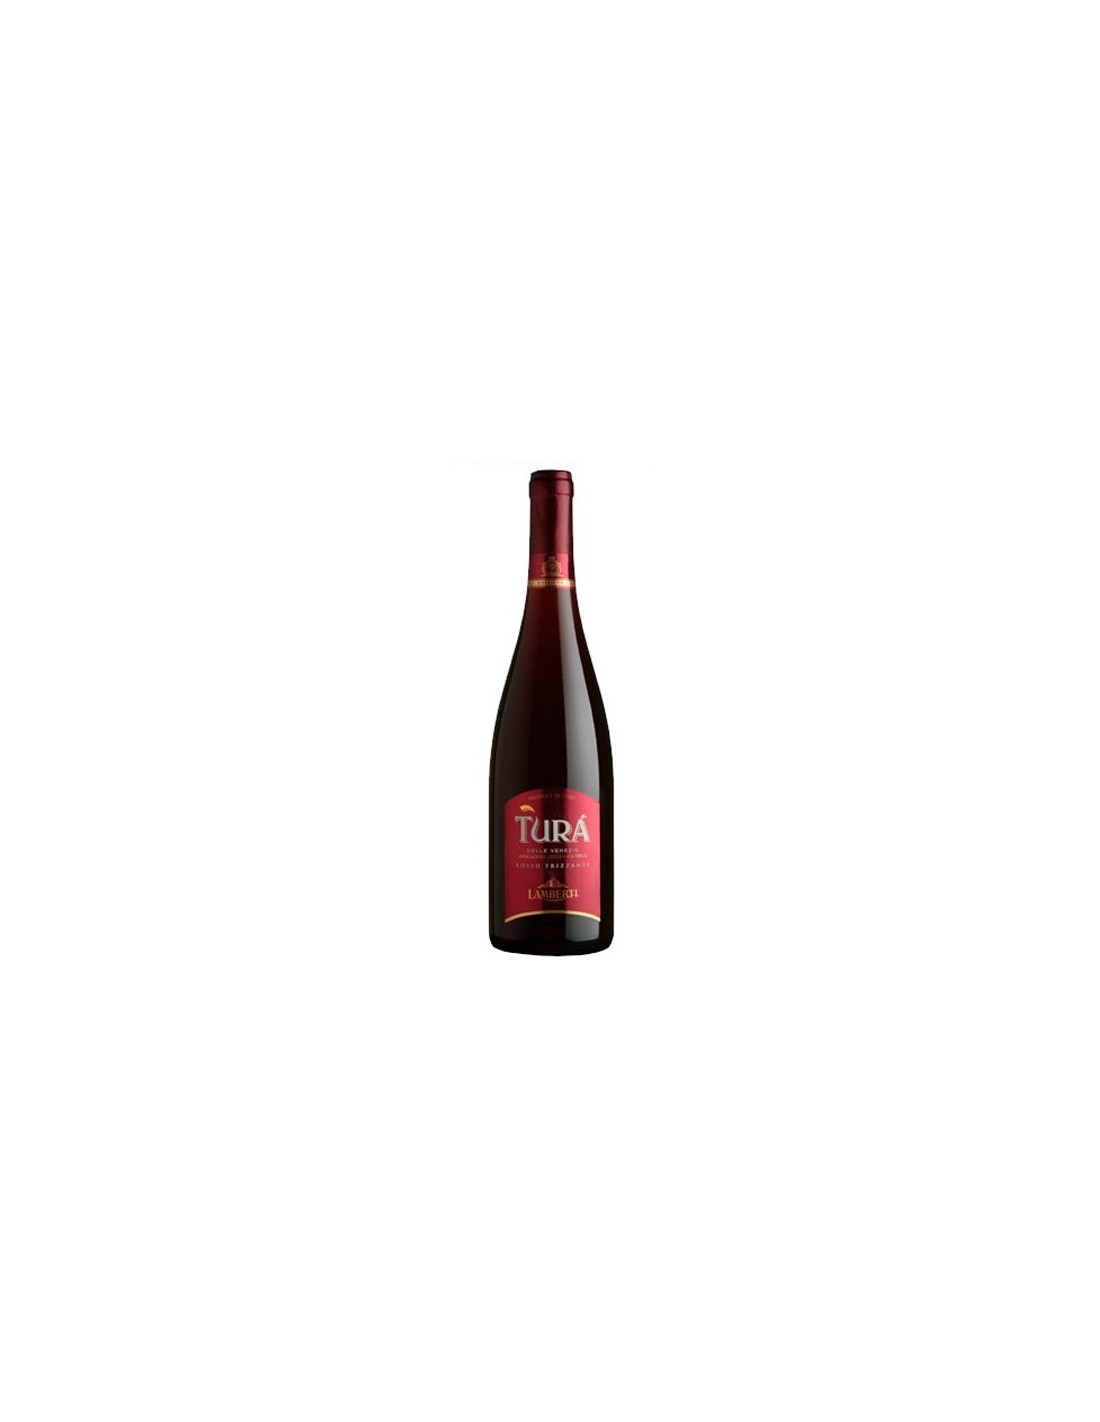 Vin frizzante rosu Lamberti Turá Veneto, 0.75L, 11.5% alc., Italia alcooldiscount.ro